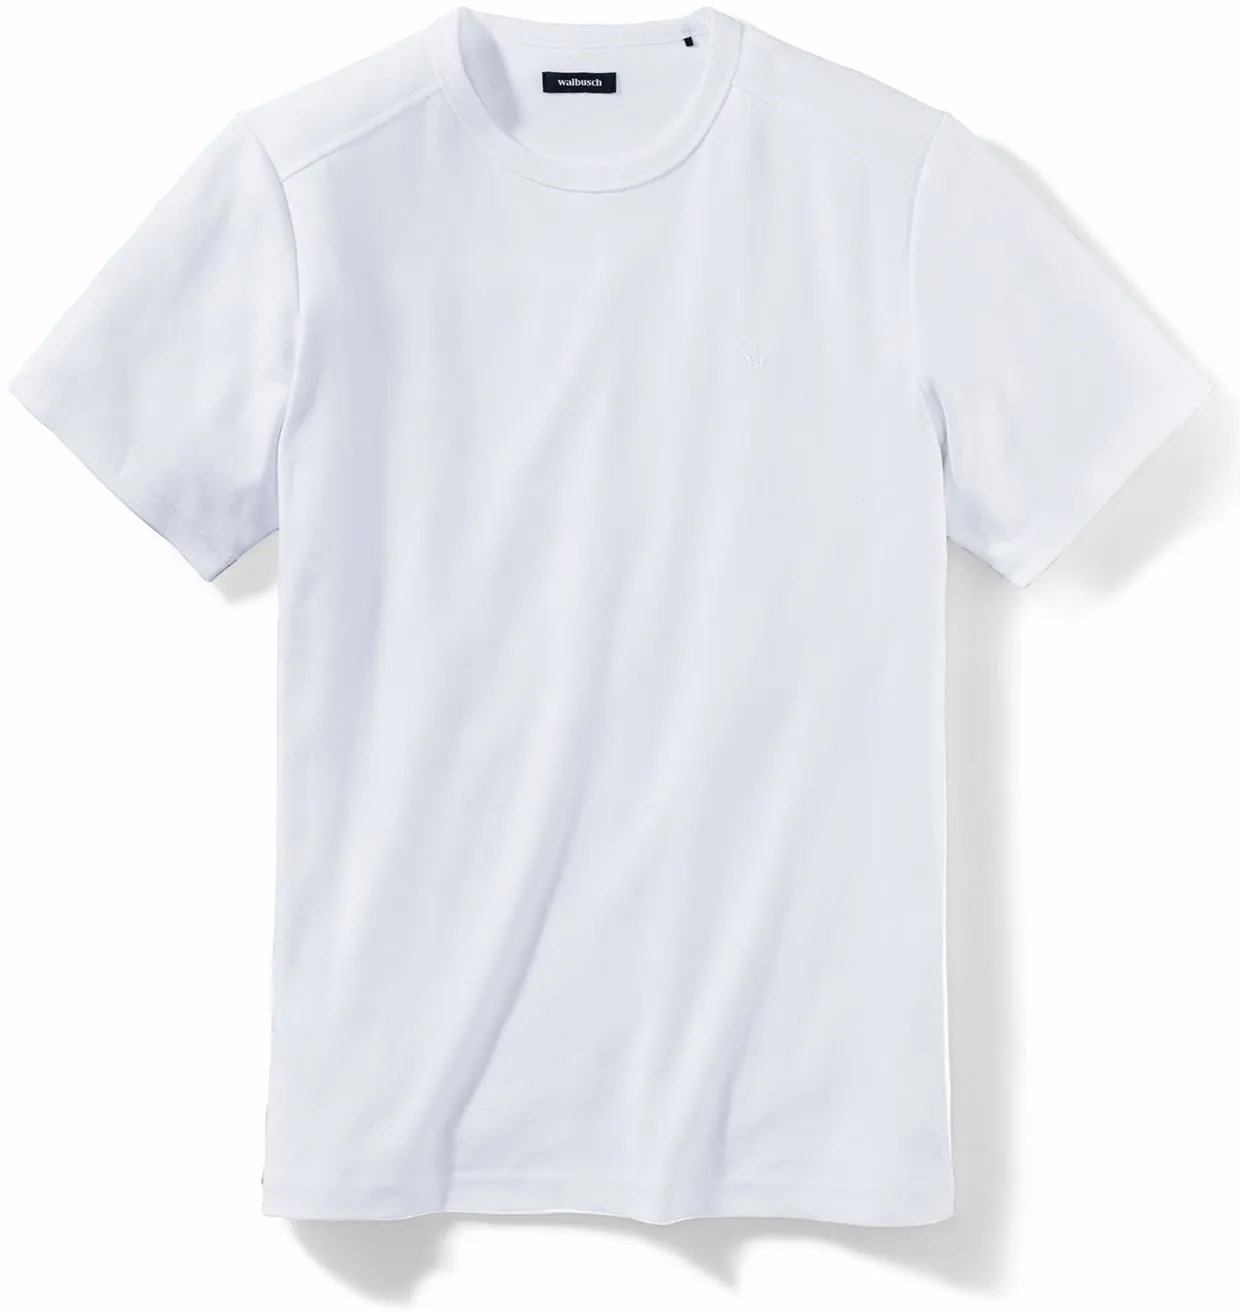 Walbusch Herren Das zu schade für drunter Shirt einfarbig Weiß 56